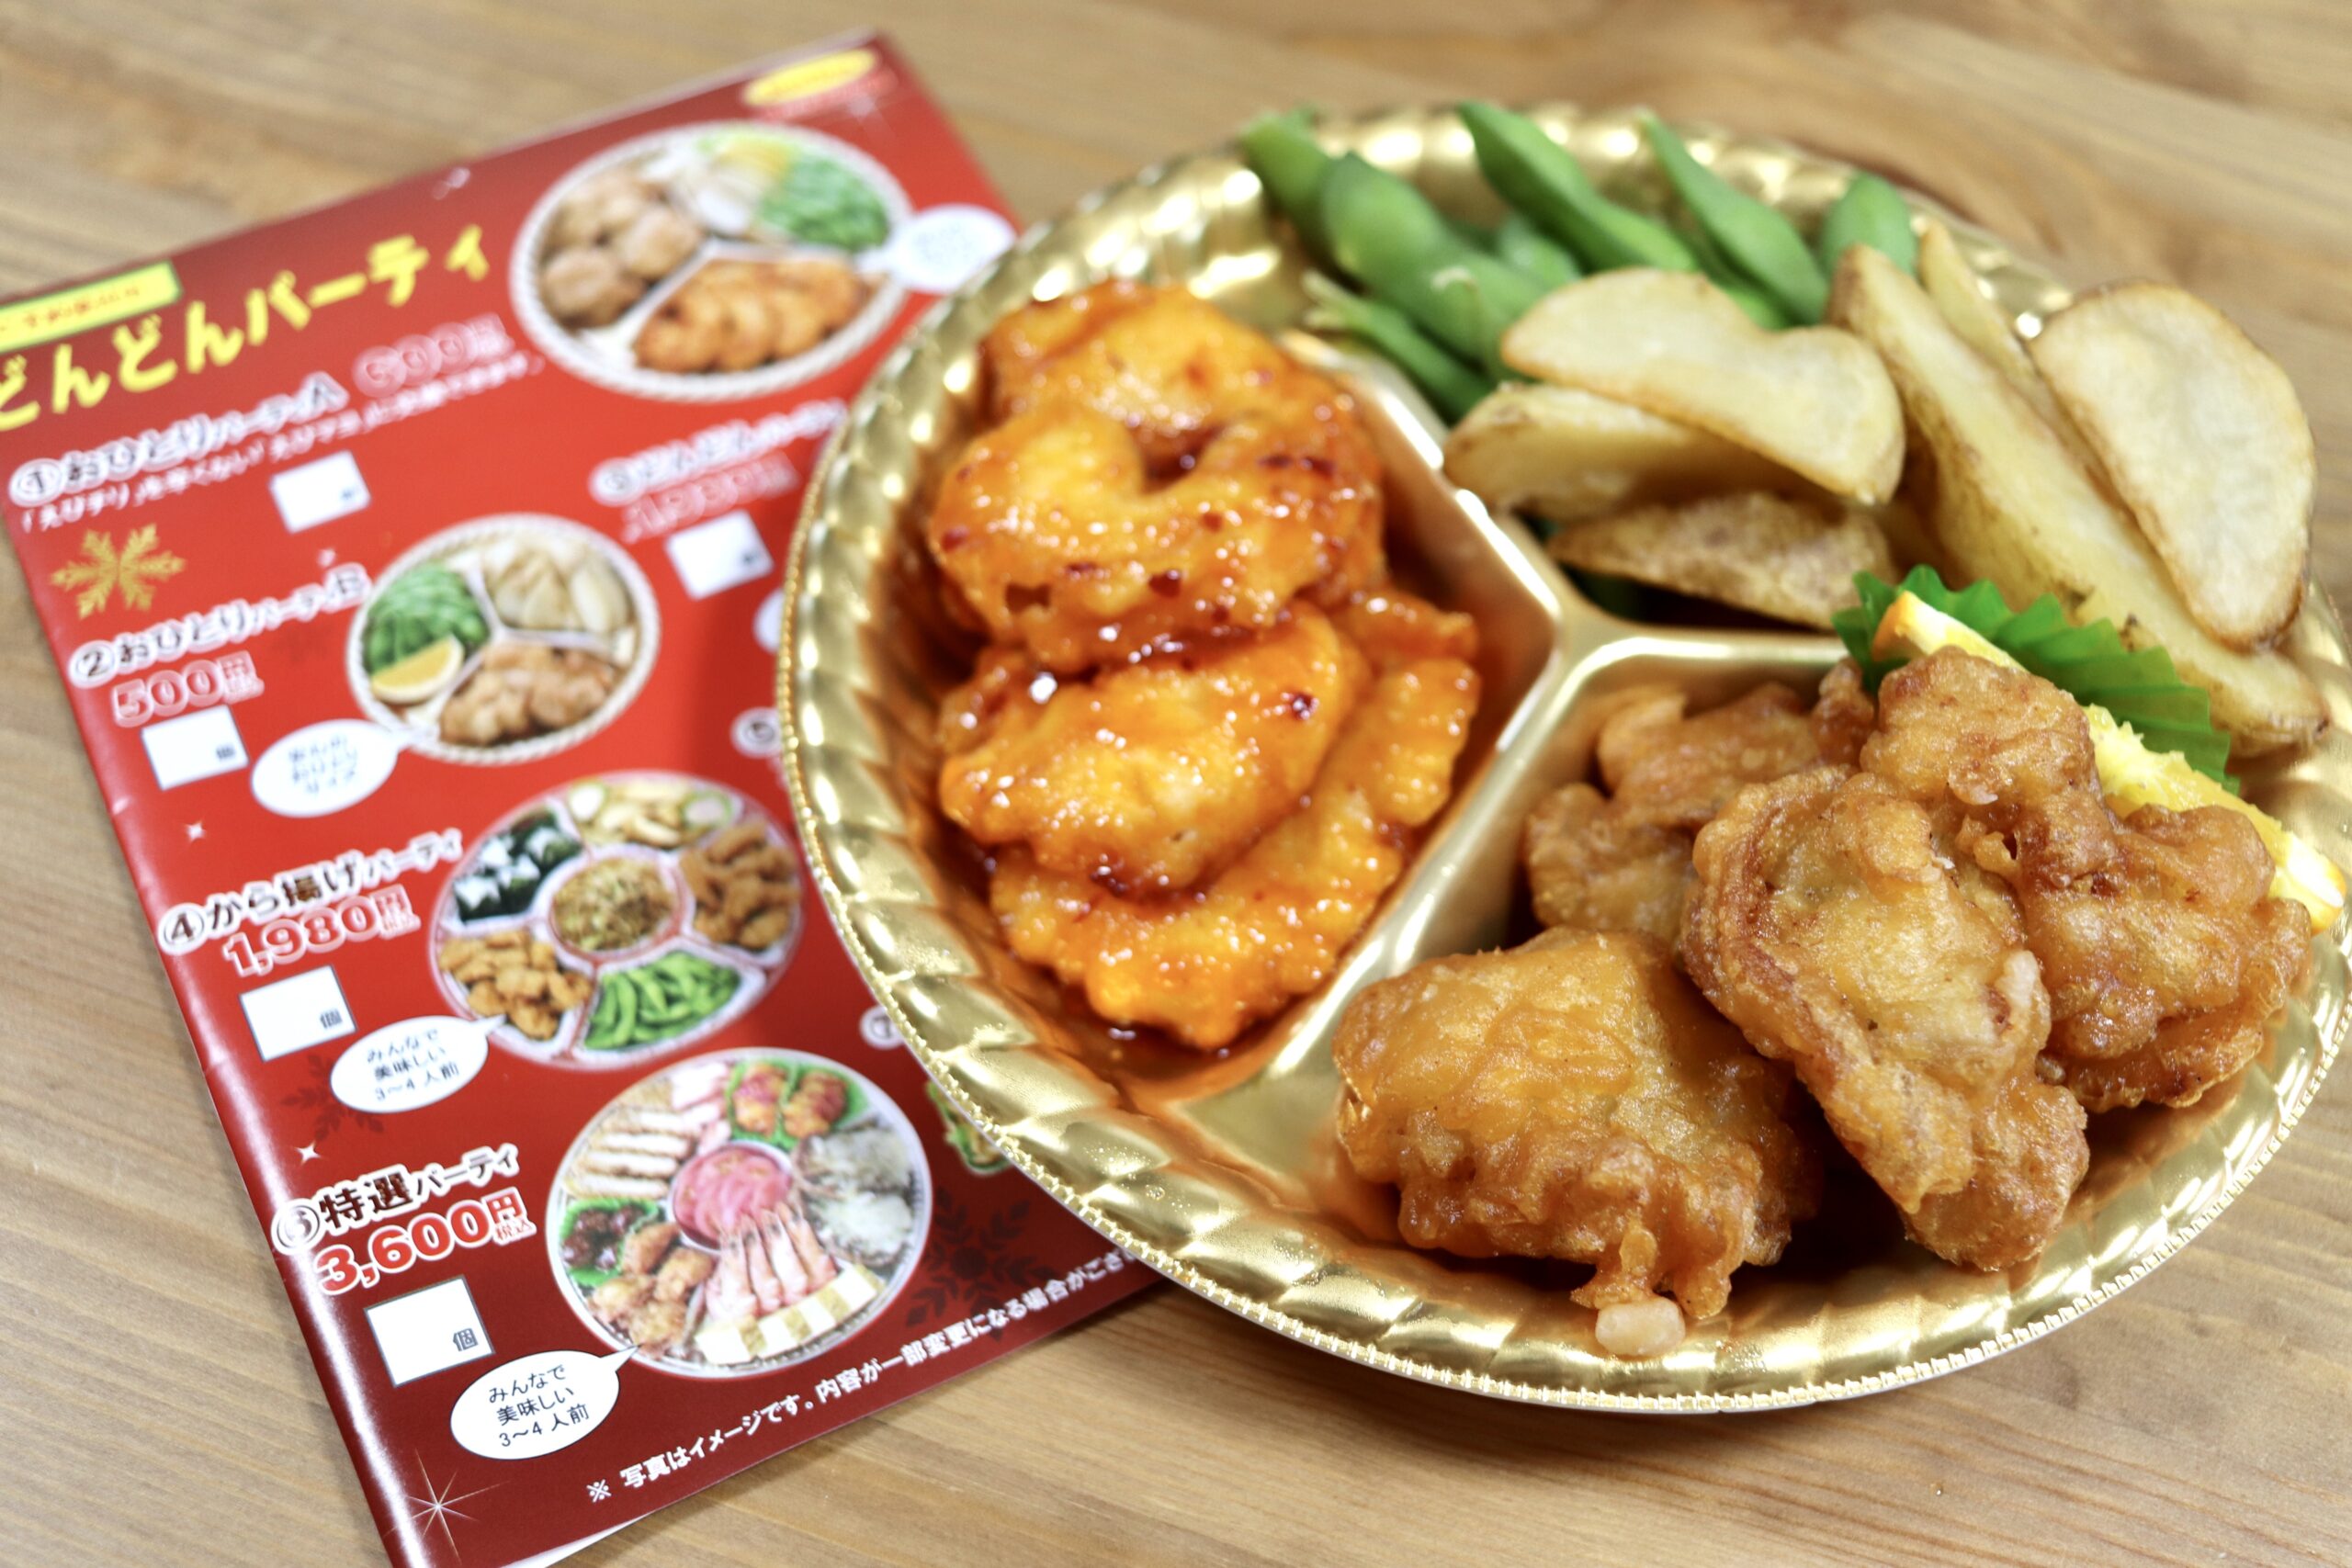 メニュー お 弁当 どんどん 静岡のローカルチェーン「お弁当どんどん」のから揚げ弁当はご飯が食べたくなる ::